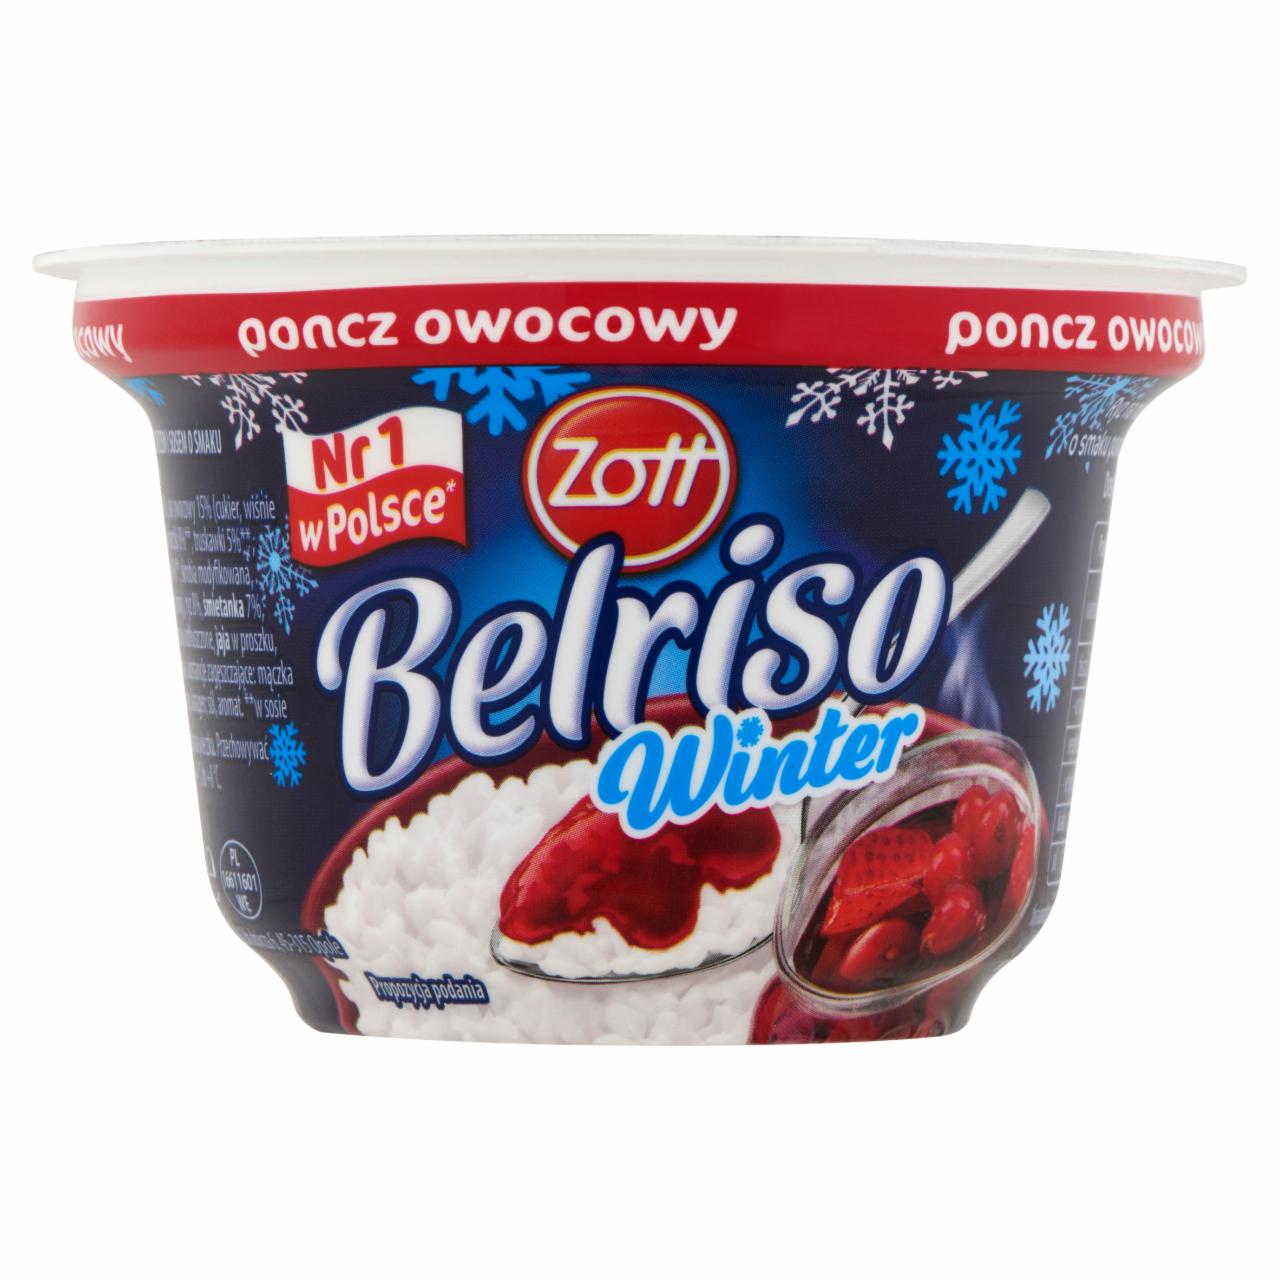 Képek - Zott Belriso Winter rumos ízű gyümölcsös tejberizs 200 g